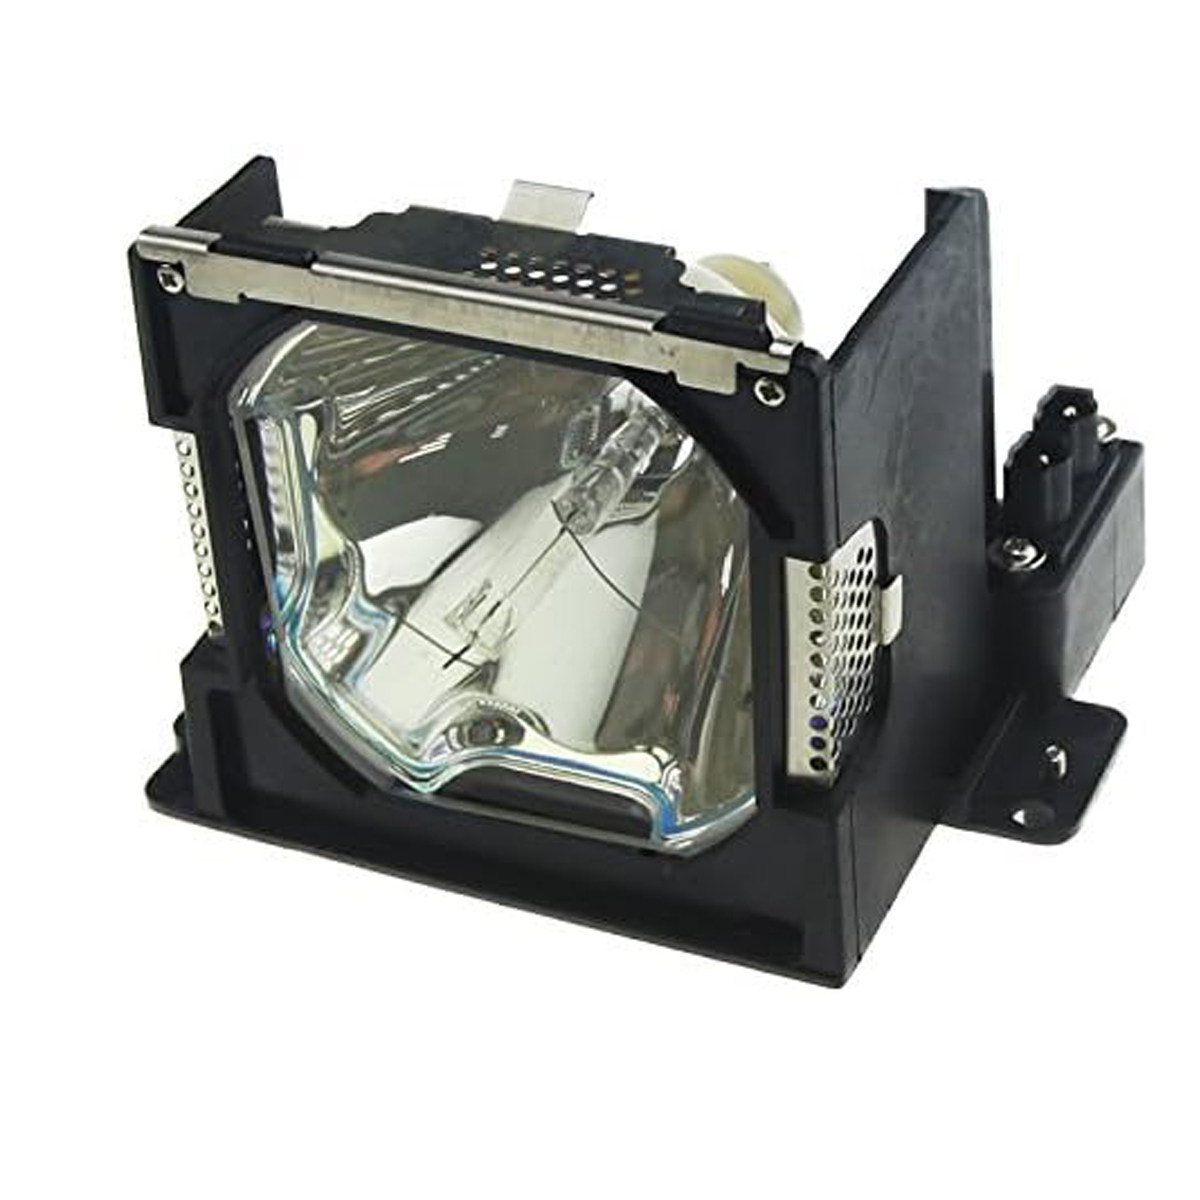 Replacement Projector lamp POA-LMP99 For Sanyo PL C-XP40 PLC-XP40L PL C-XP45